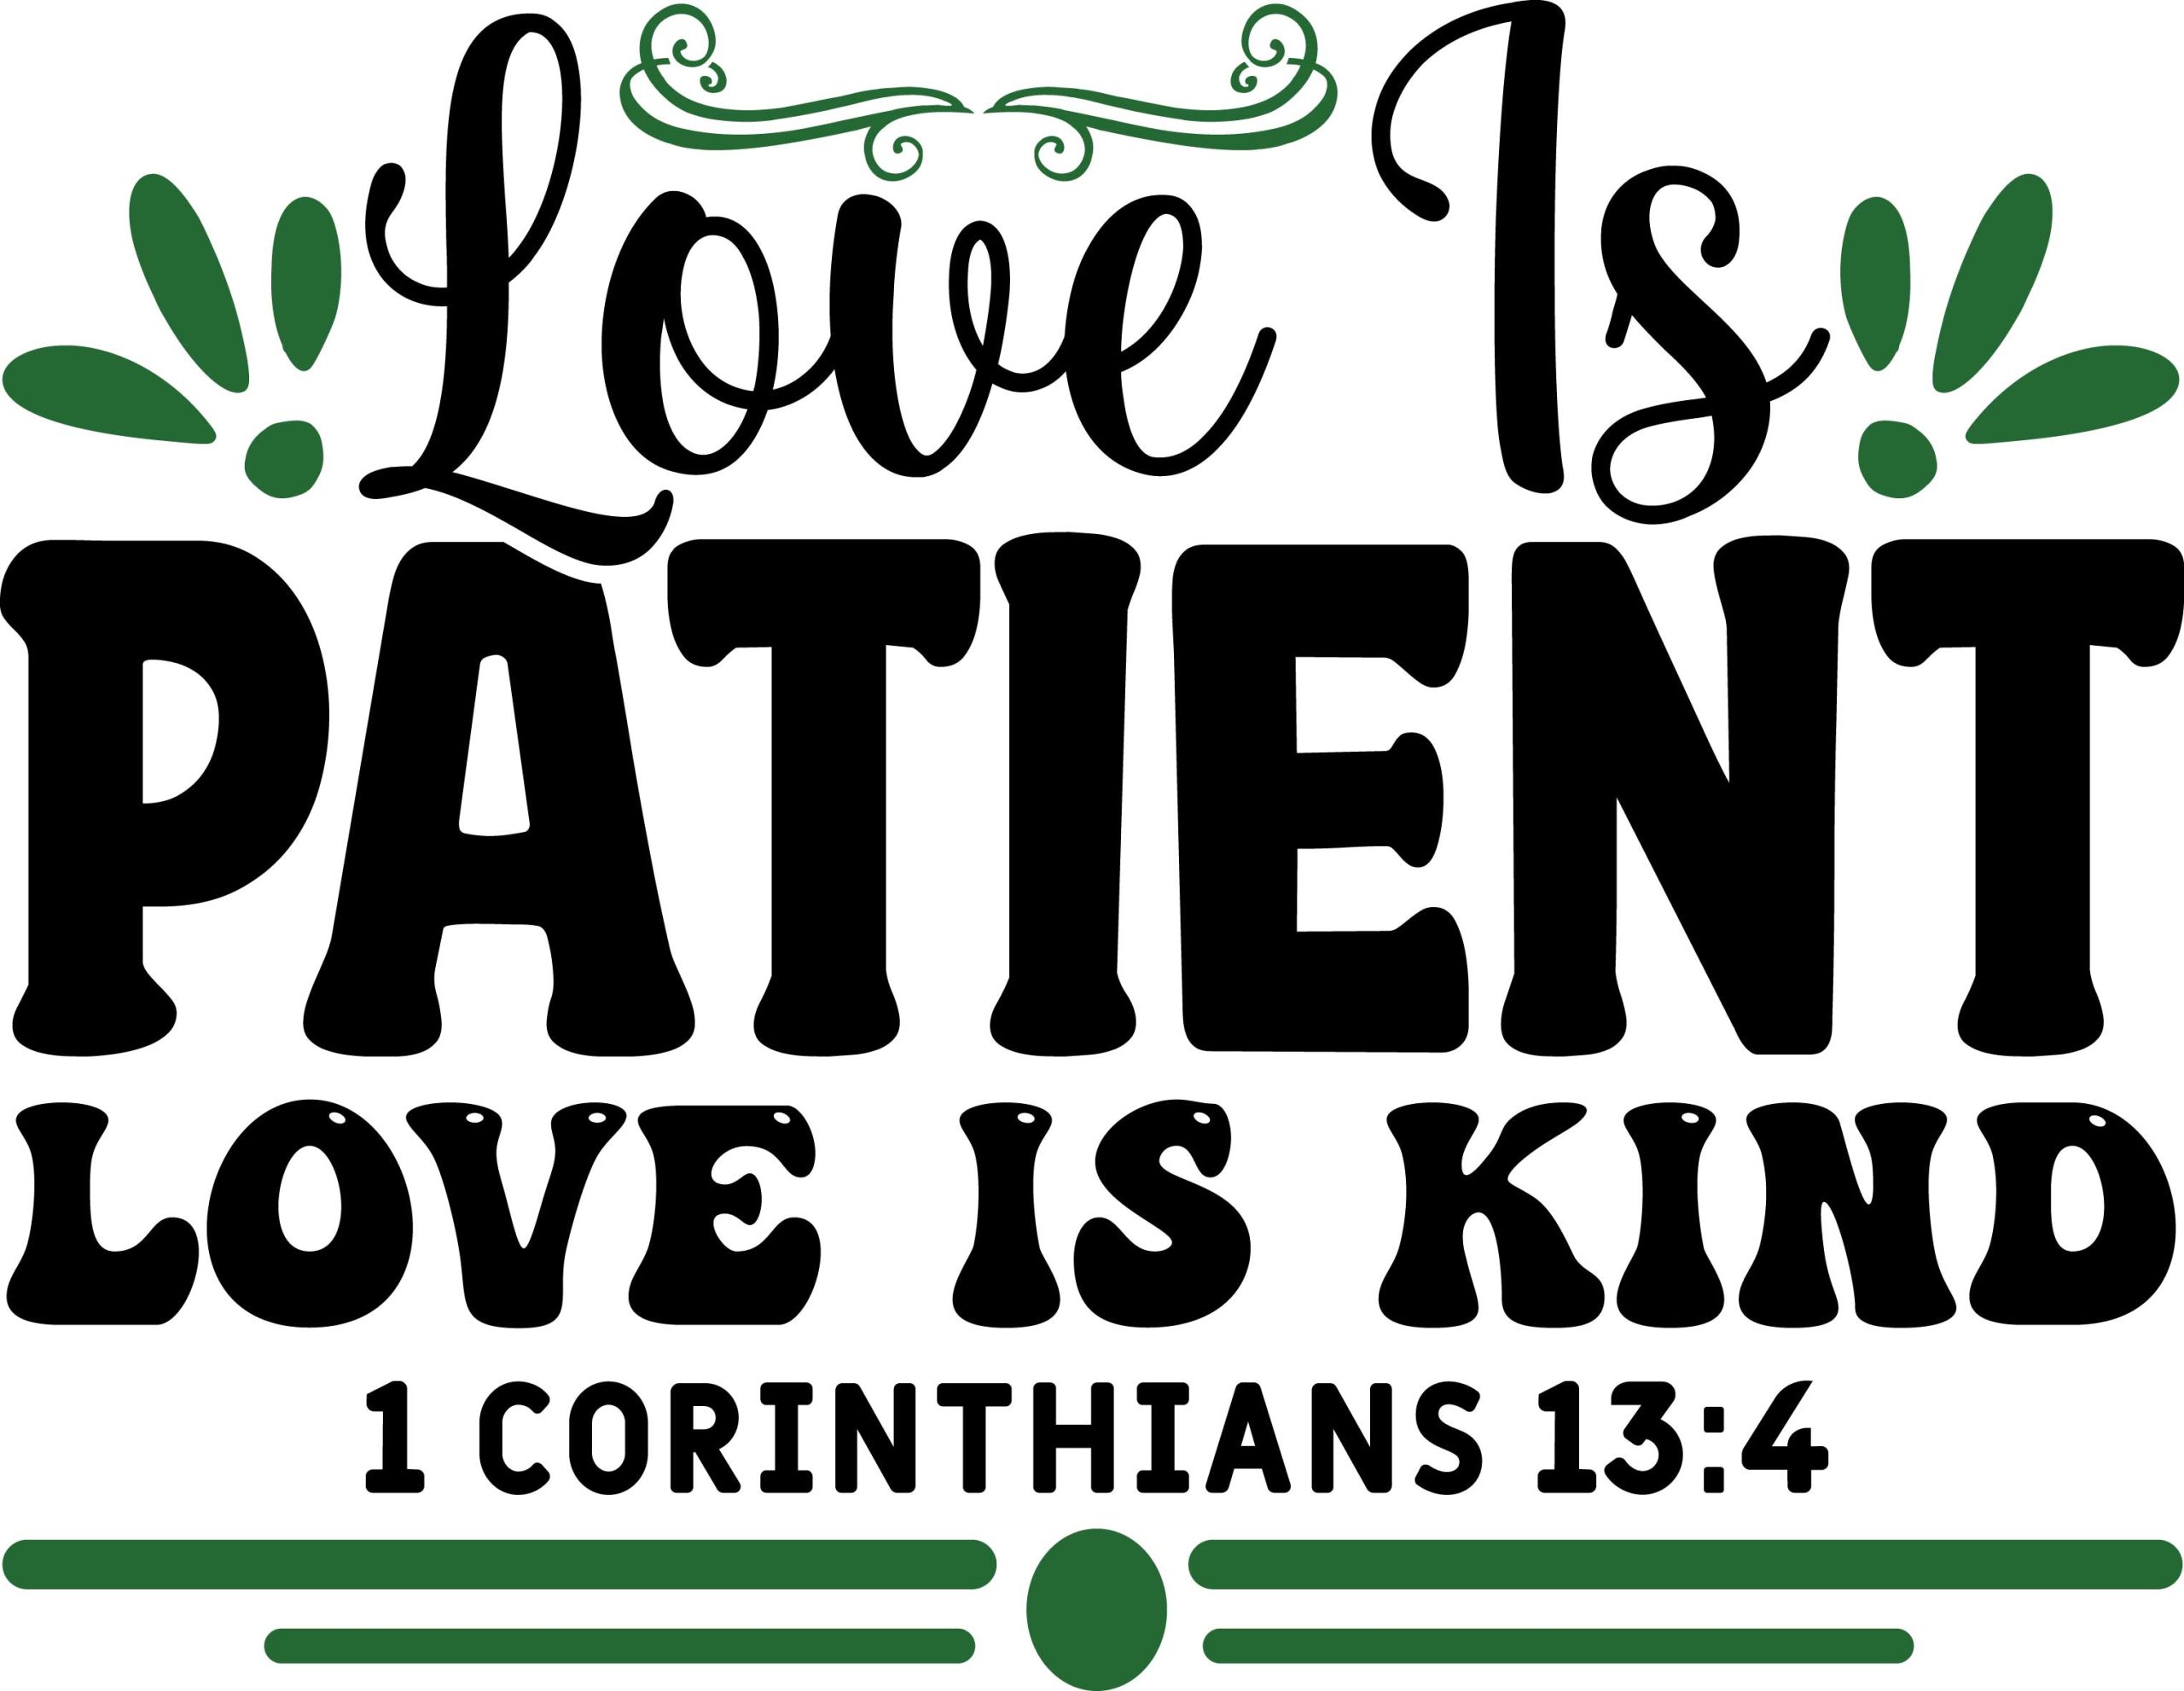 Love is patient love is kind 1 Corinthians 13:4, bible verses, scripture verses, svg files, passages, sayings, cricut designs, silhouette, embroidery, bundle, free cut files, design space, vector